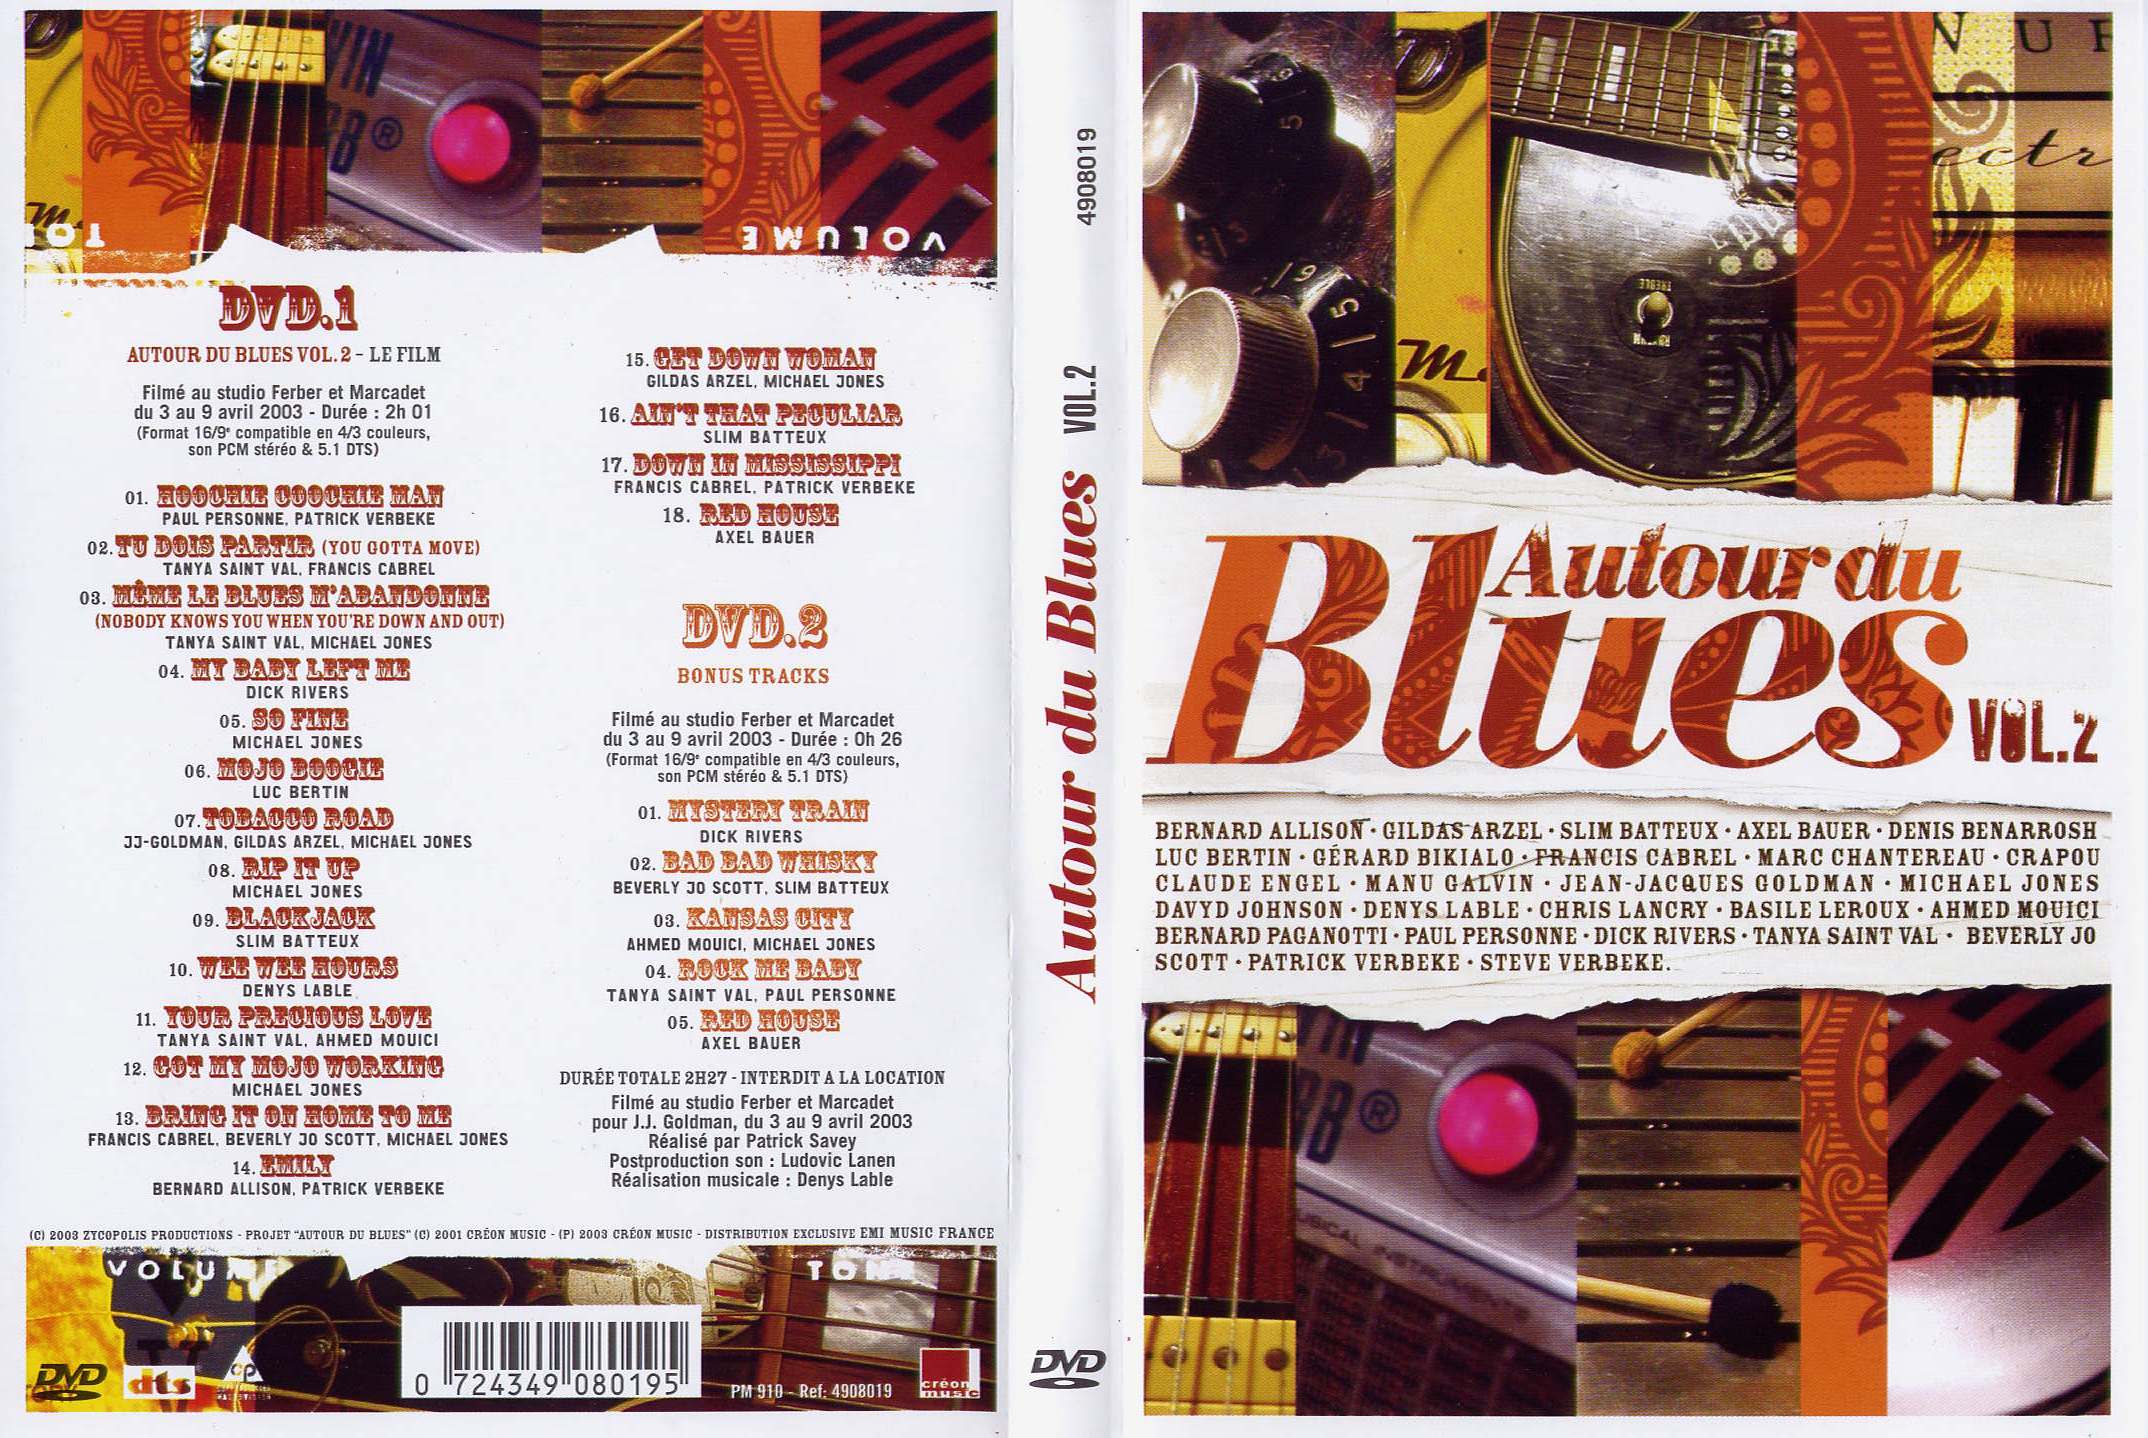 Jaquette DVD Autour du blues 2